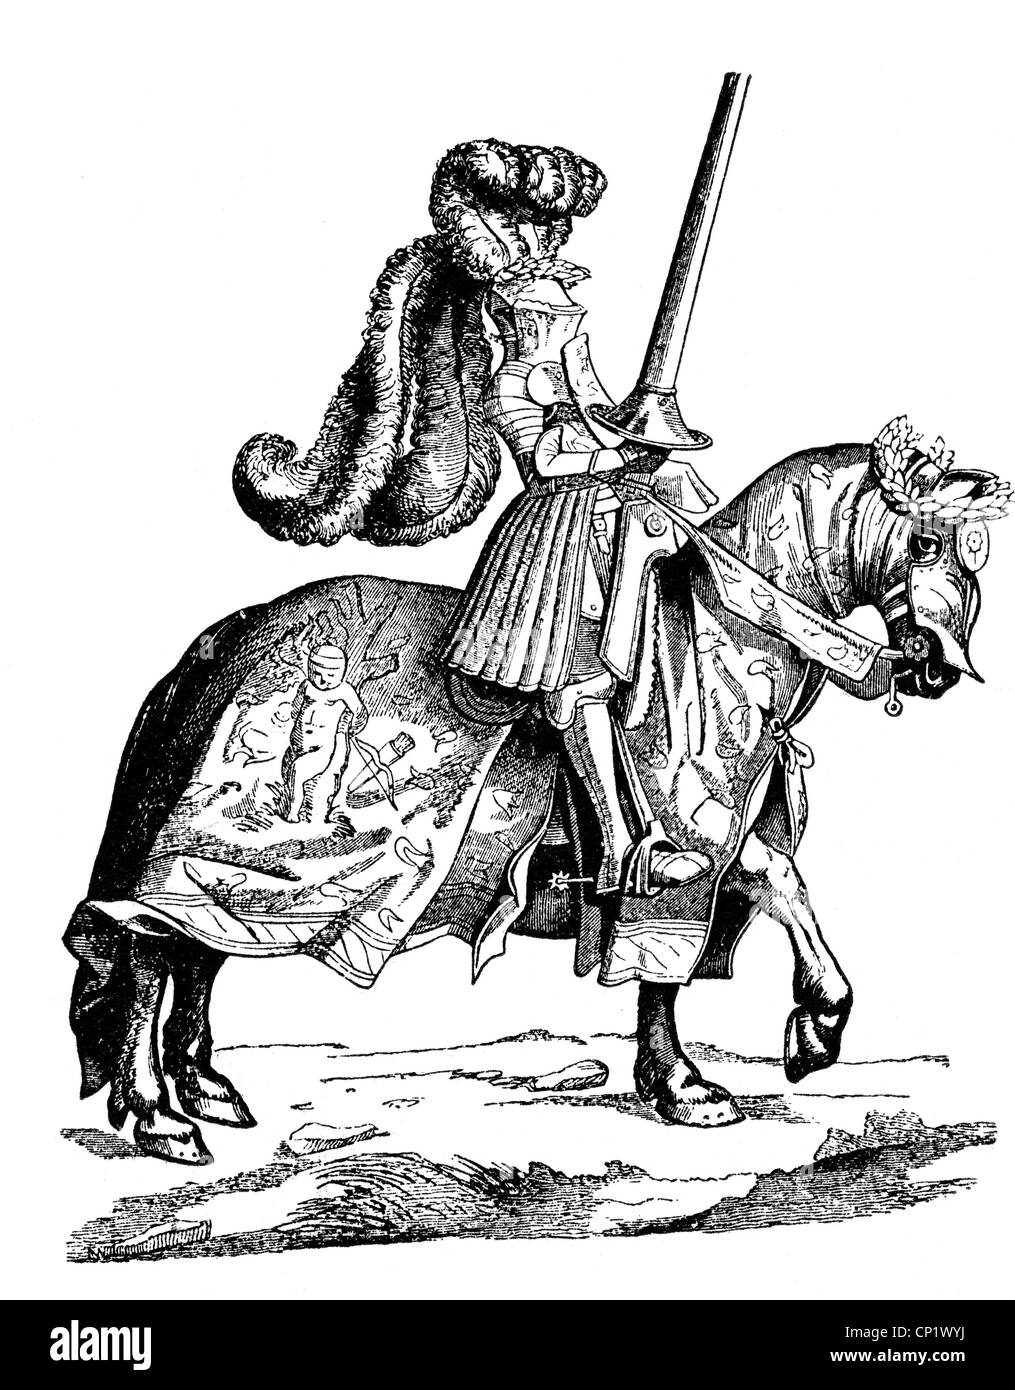 Mittelalter, Ritter, Darstellung eines Ritters, Holzschnitt von Hans Burgkmair, nach einer Zeichnung von Albrecht Dürer, circa 1500, Artist's Urheberrecht nicht geklärt zu werden. Stockfoto